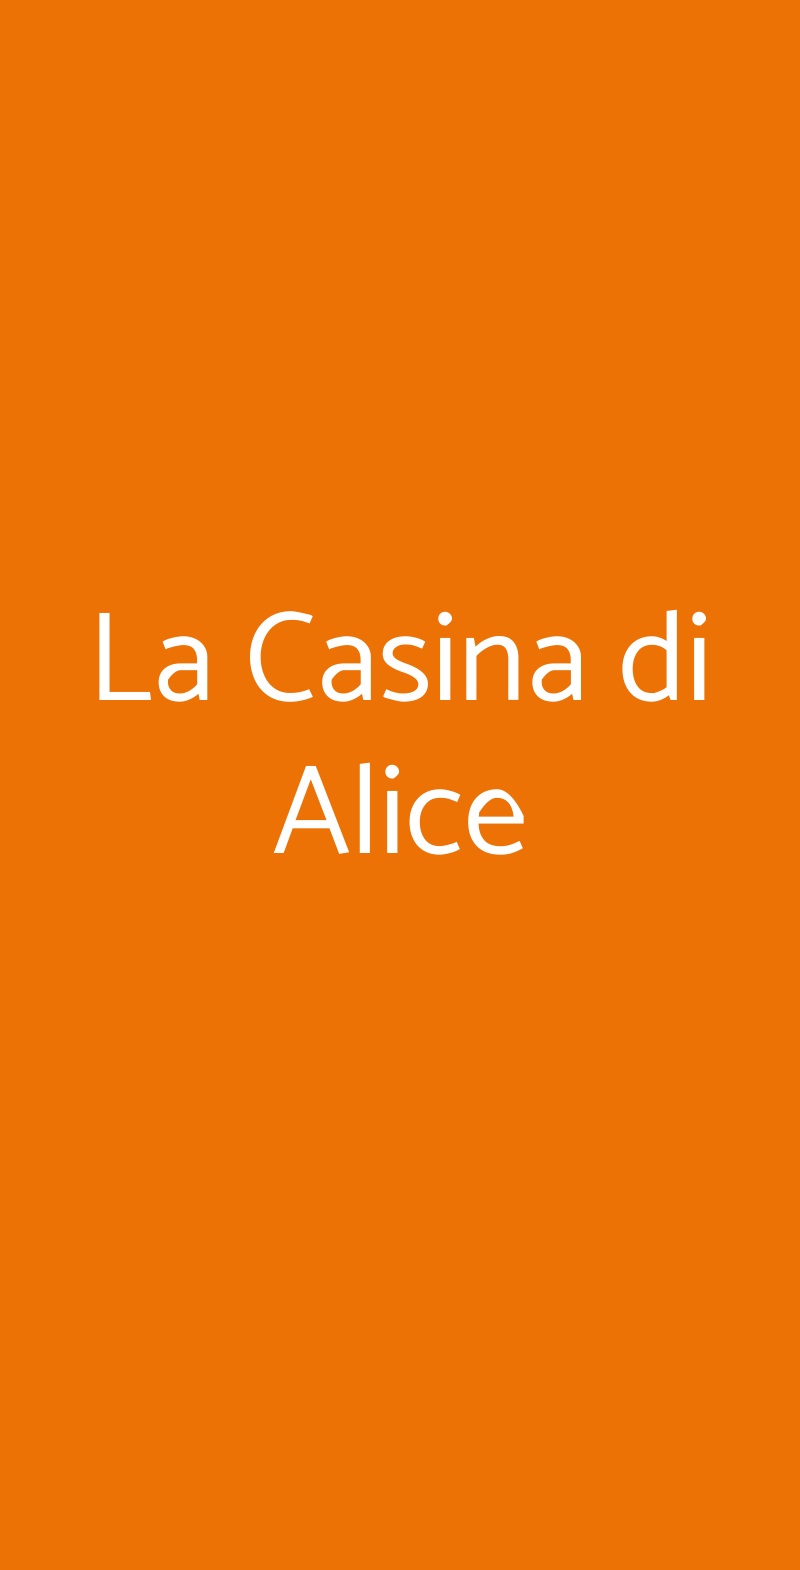 La Casina di Alice Livorno menù 1 pagina